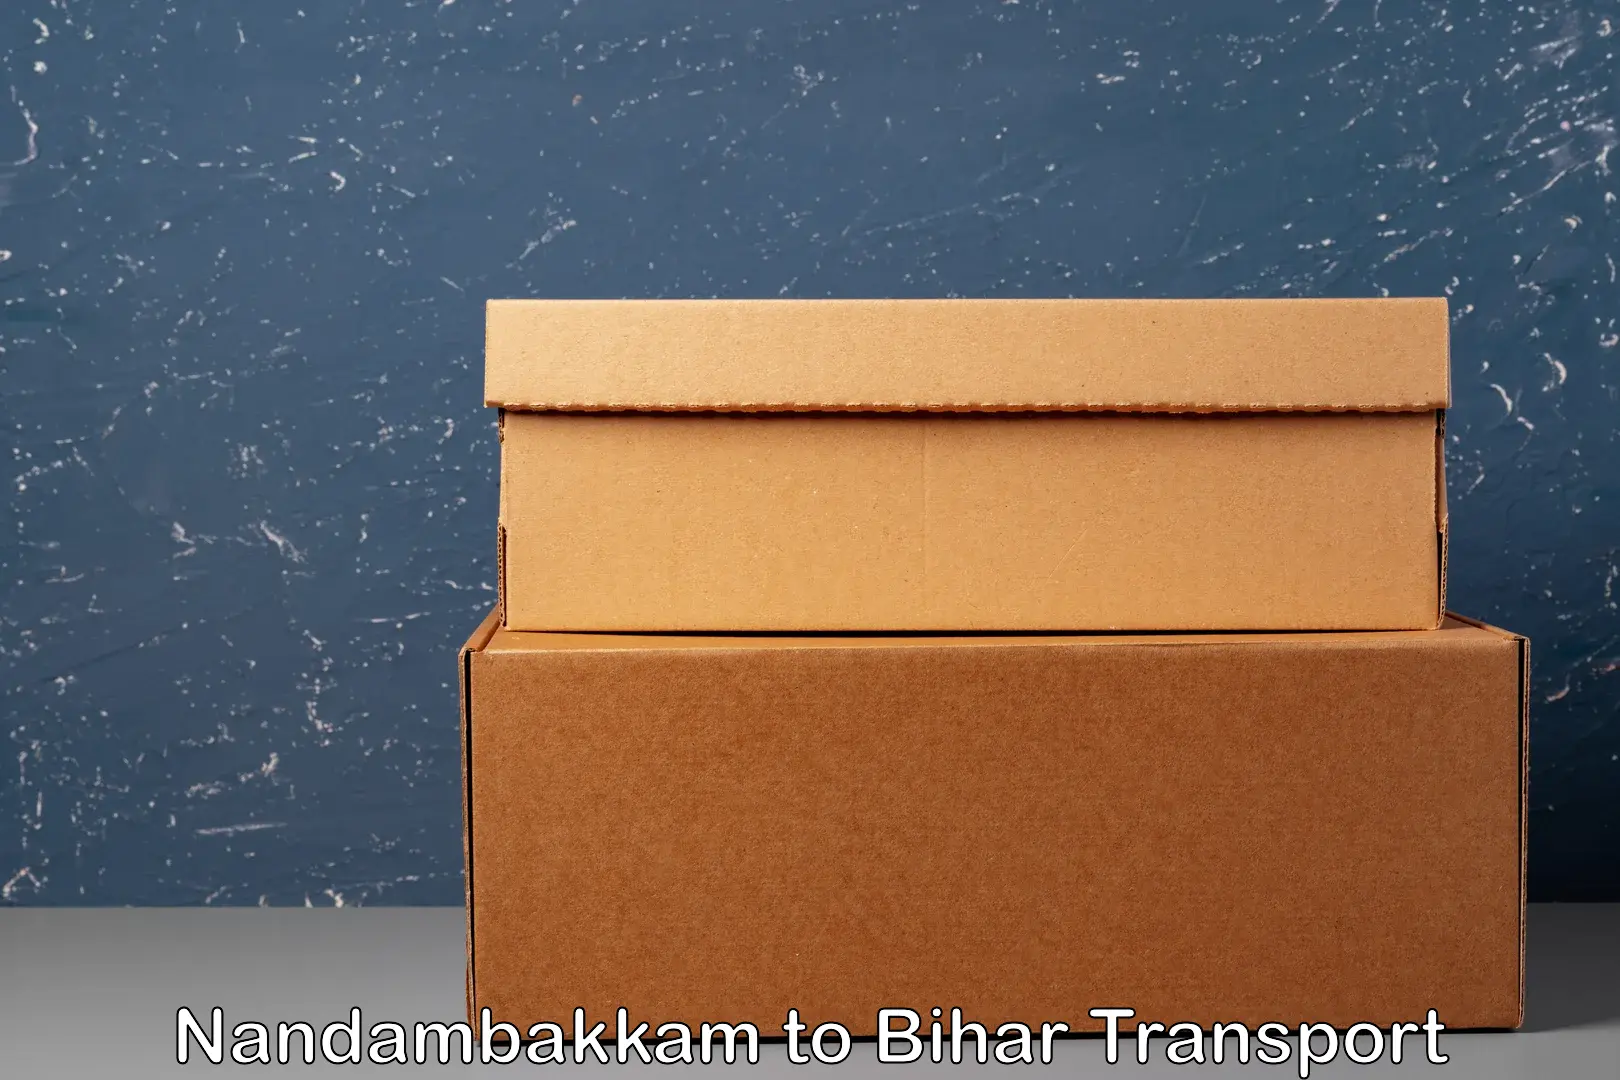 International cargo transportation services Nandambakkam to Mahnar Bazar